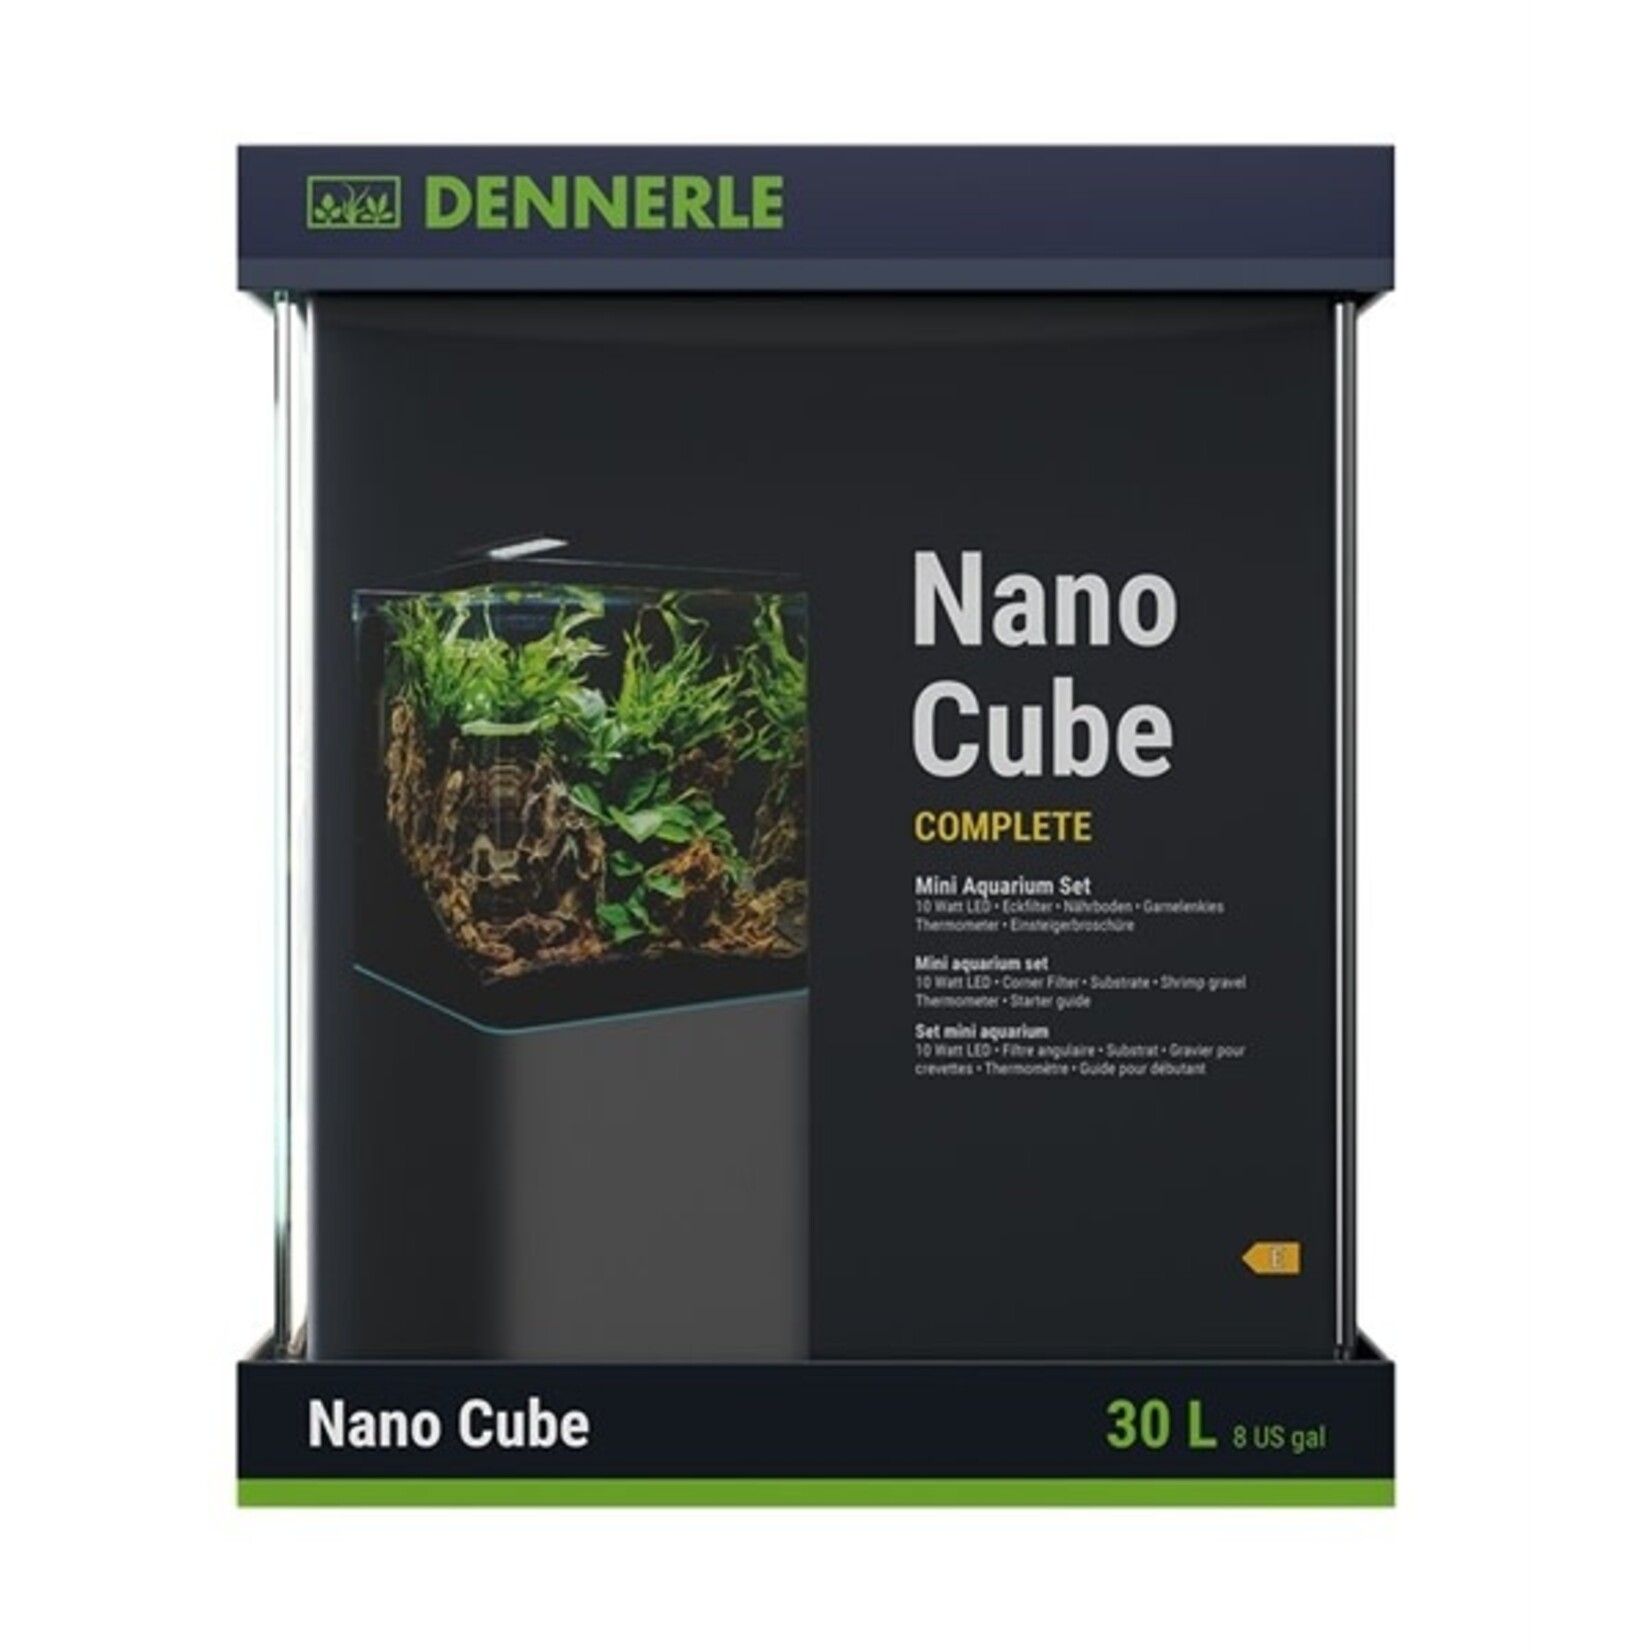 Dennerle nano cube complete 30 l